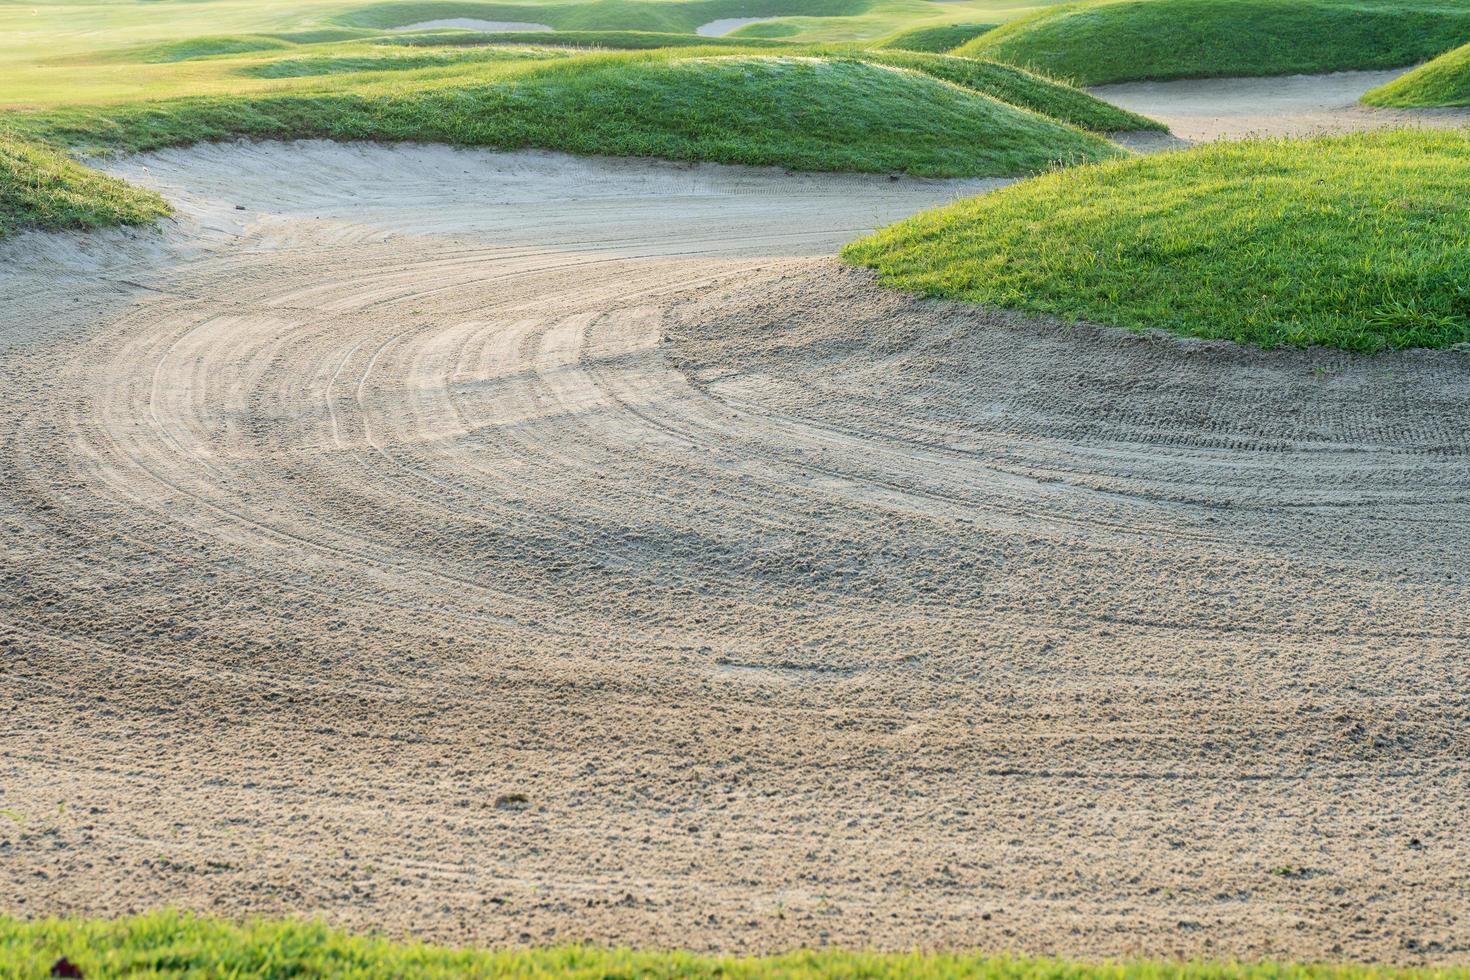 golfbaan zandbak achtergrond, obstakelbunkers worden gebruikt voor golftoernooien foto